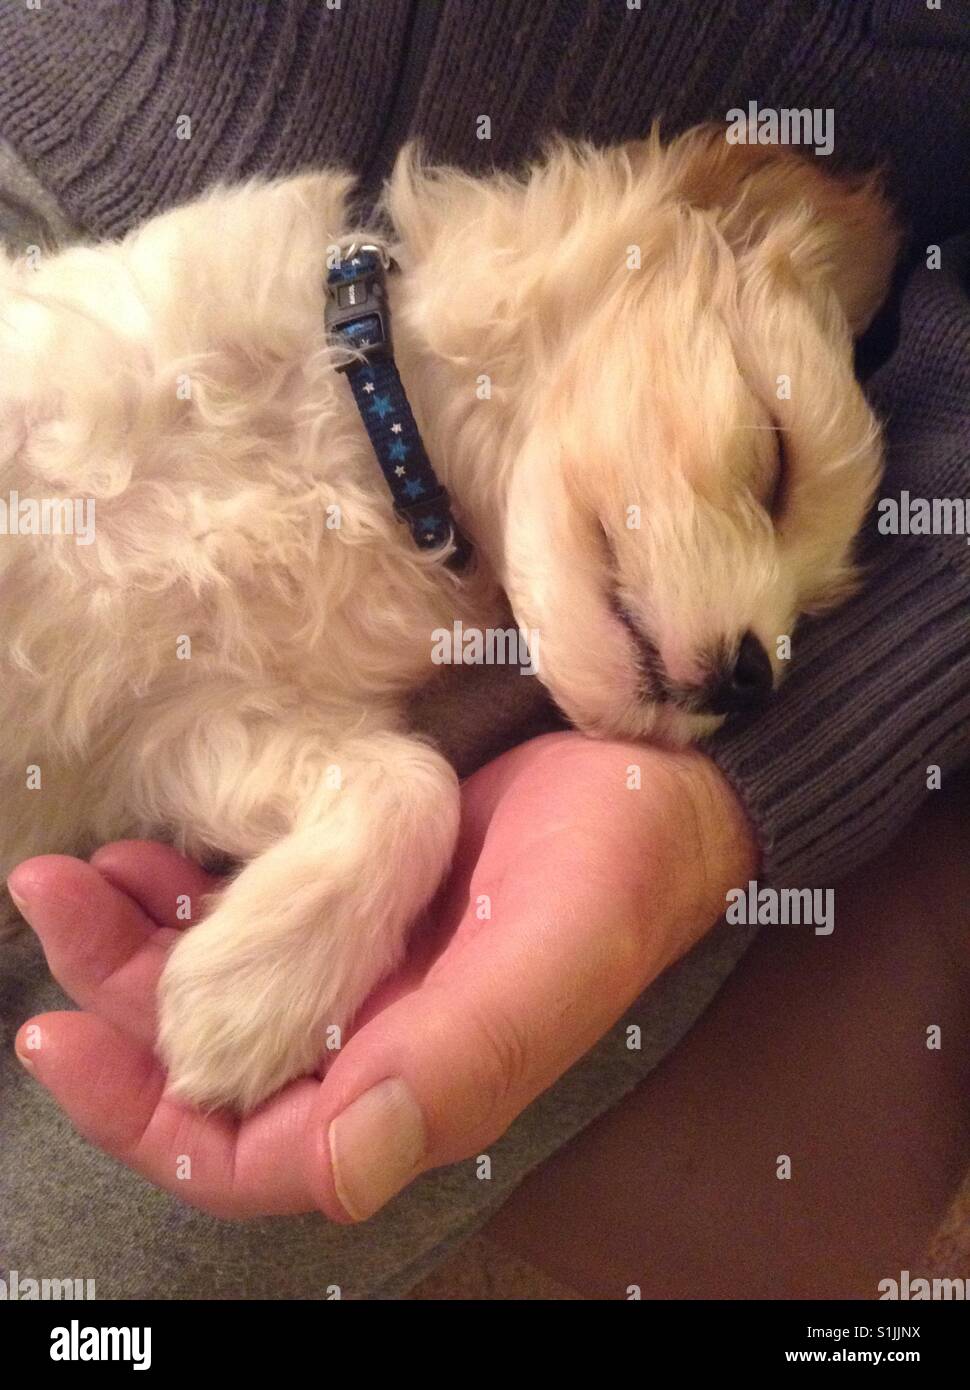 Sleeping cucciolo con zampa appoggiata in mano umana Foto Stock